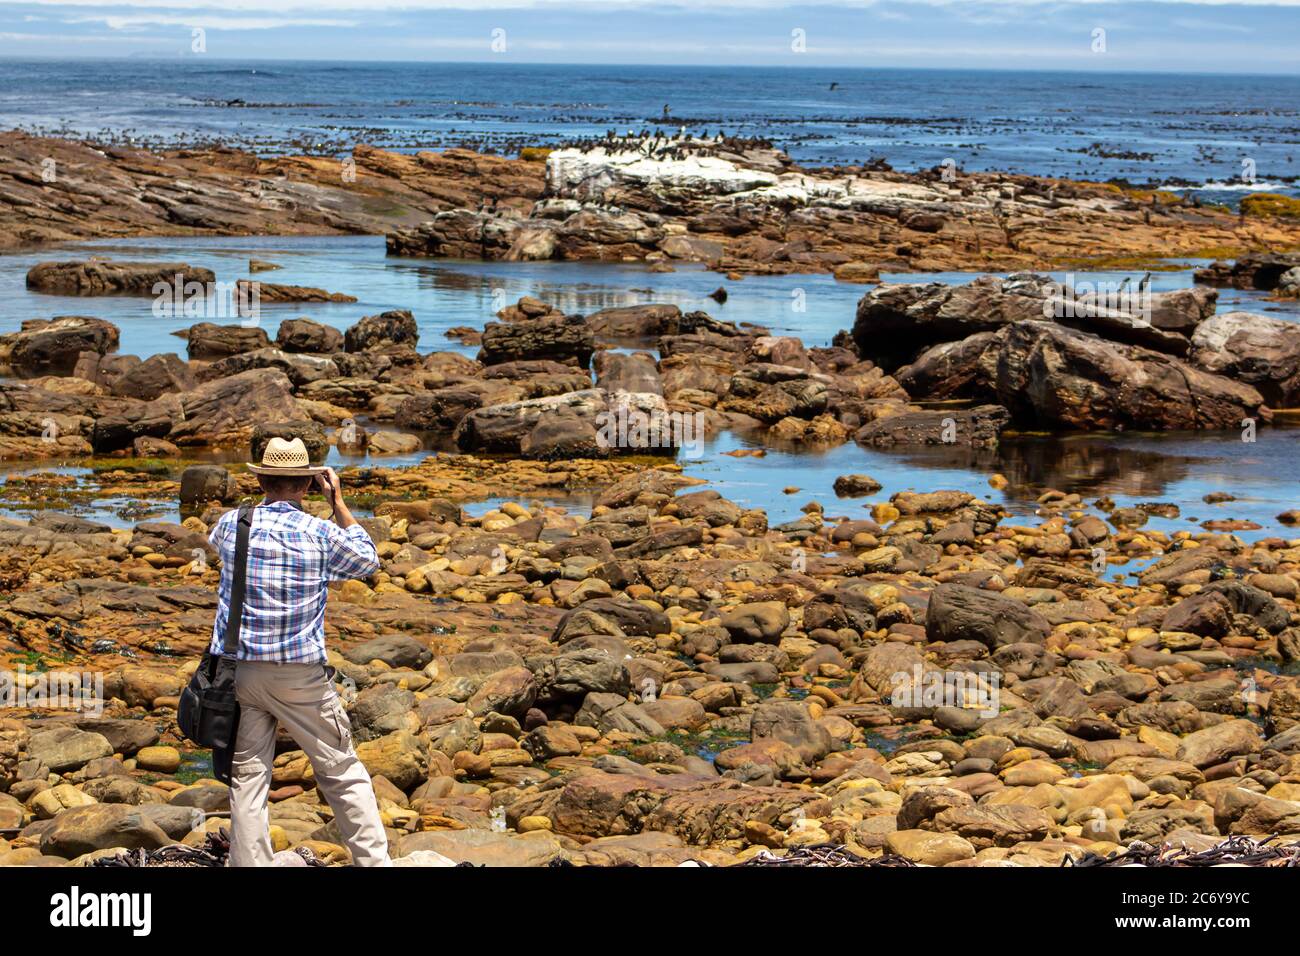 Der Mensch fotografiert Wildtiere am felsigen Meeresufer am Kap der Guten Hoffnung Stockfoto